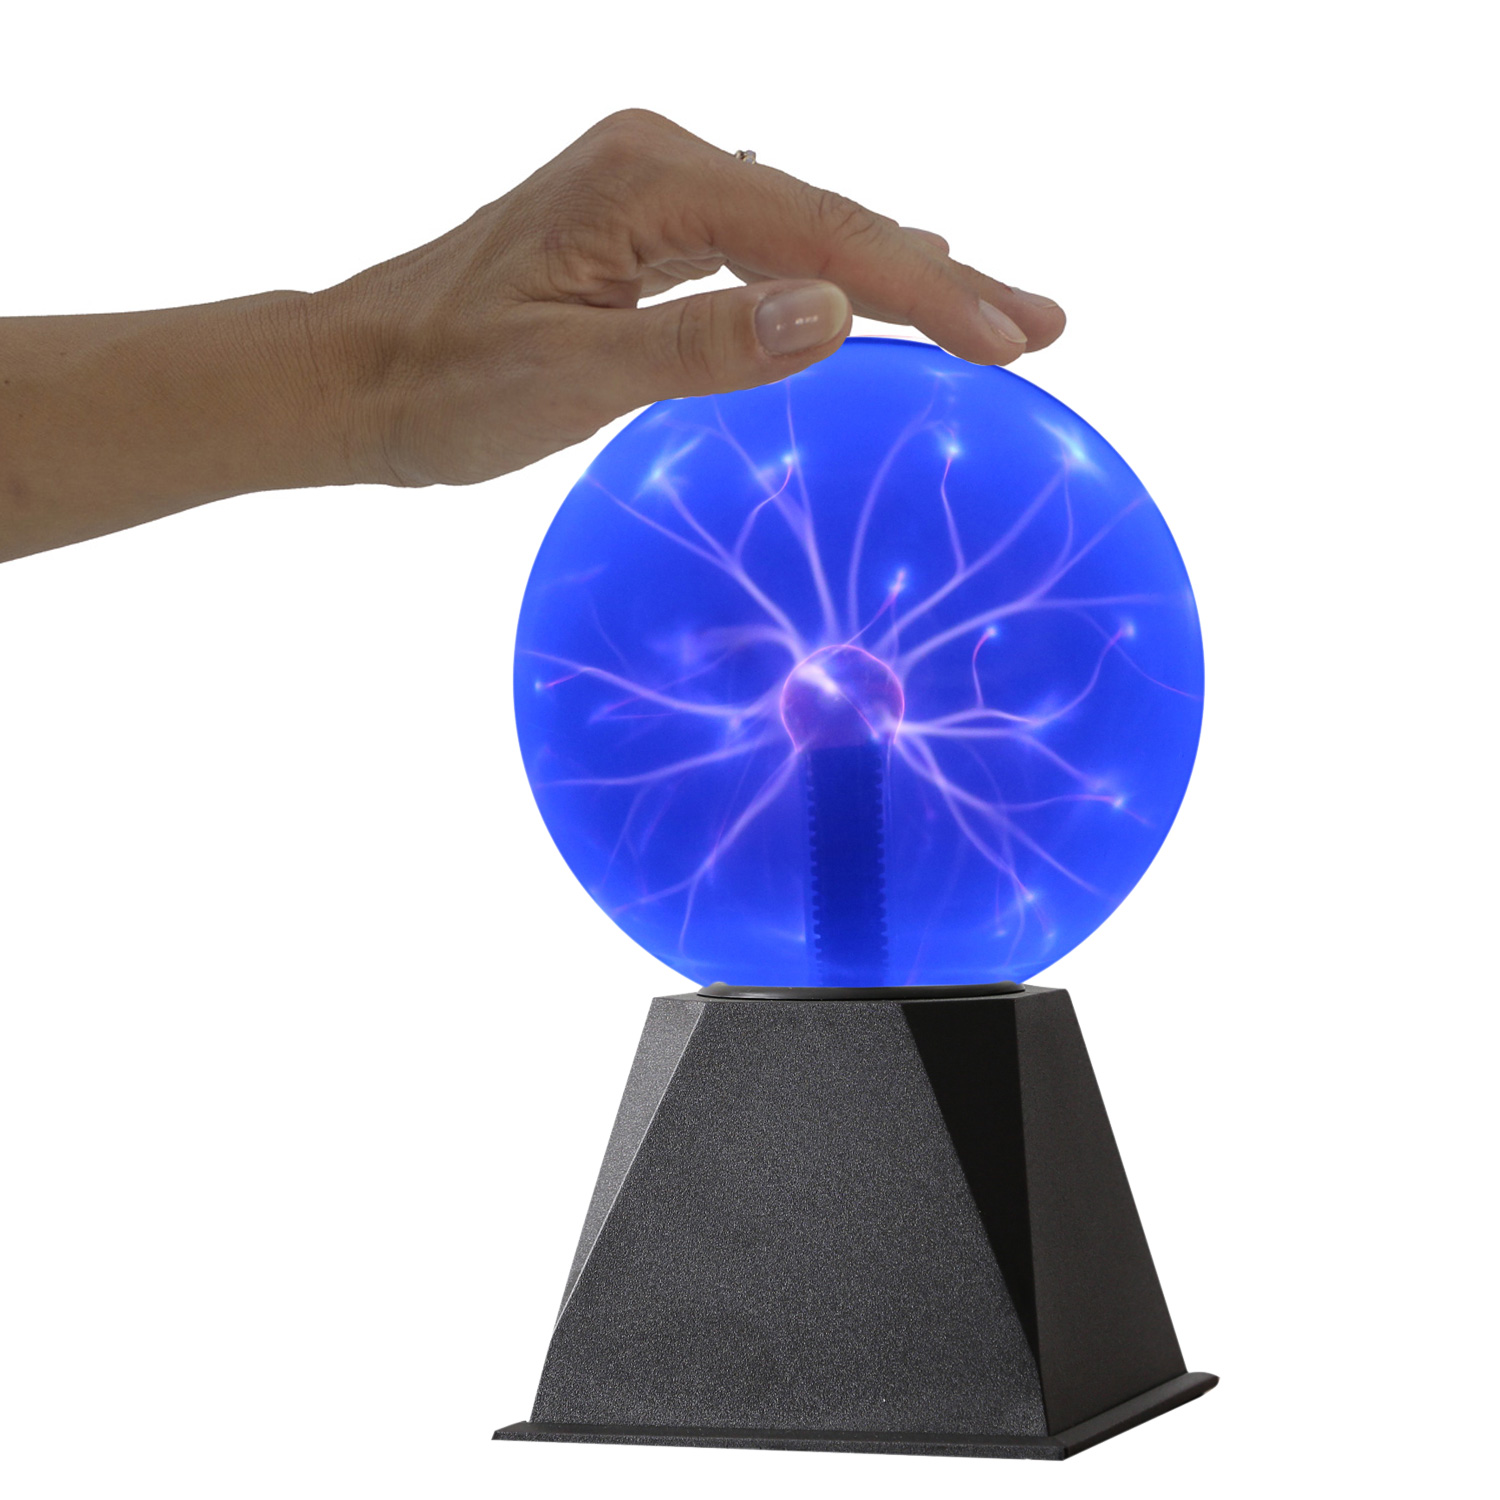 Plasmakugel zuckend- blaue Blitz-Show - Automatikbetrieb oder Musiksteuerung - 15cm Kugel